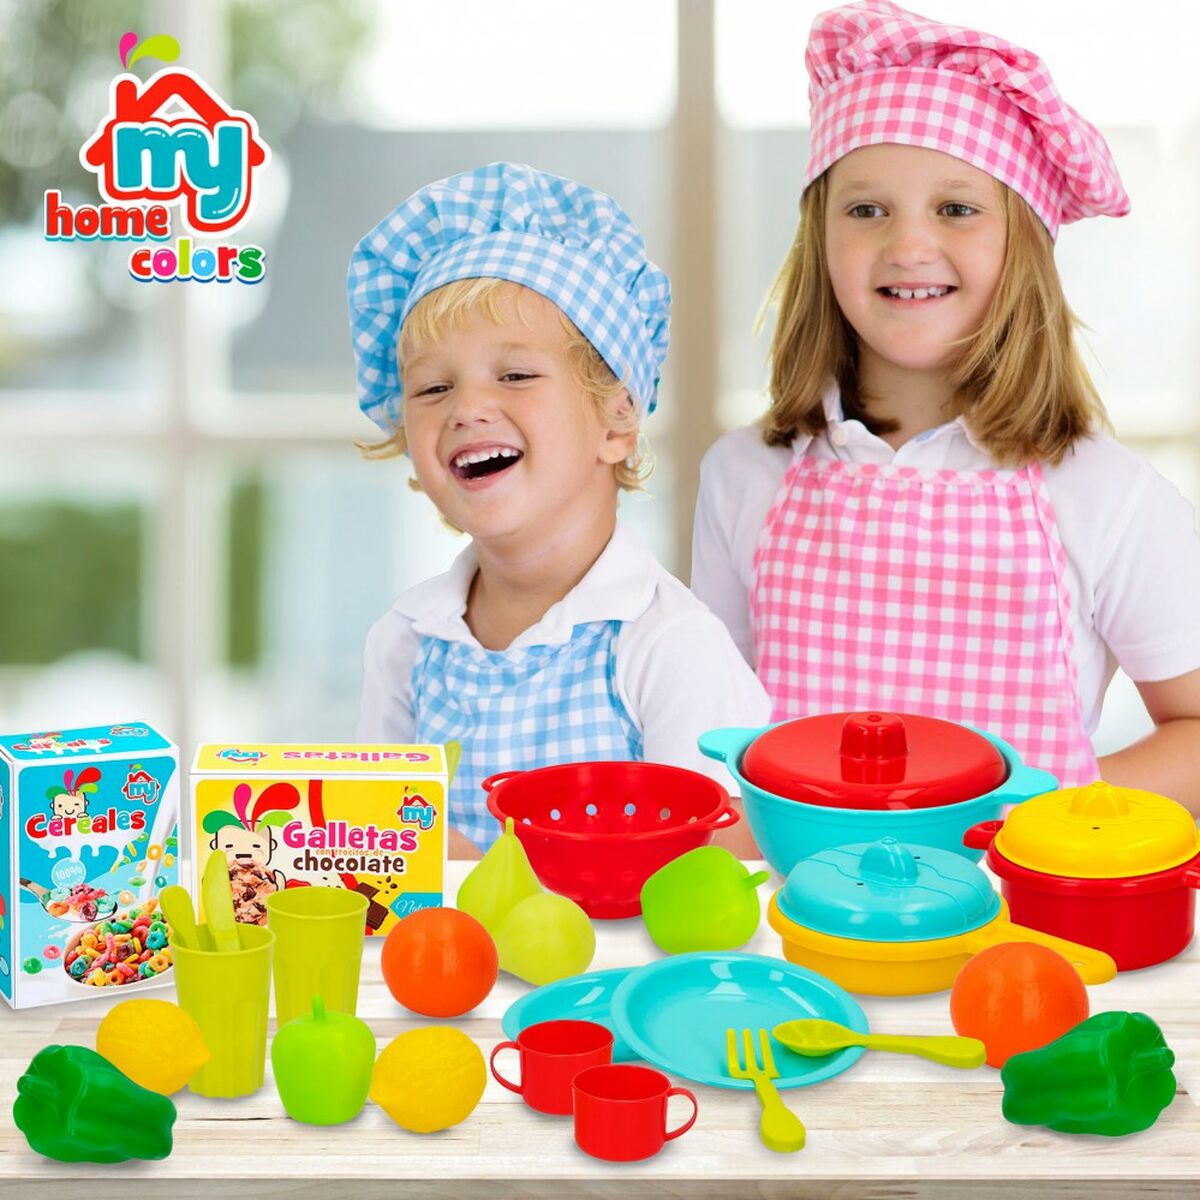 Sats med matleksaker Colorbaby Köksredskap och tillbehör 31 Delar (6 antal)-Leksaker och spel, Imitera spel-Colorbaby-peaceofhome.se